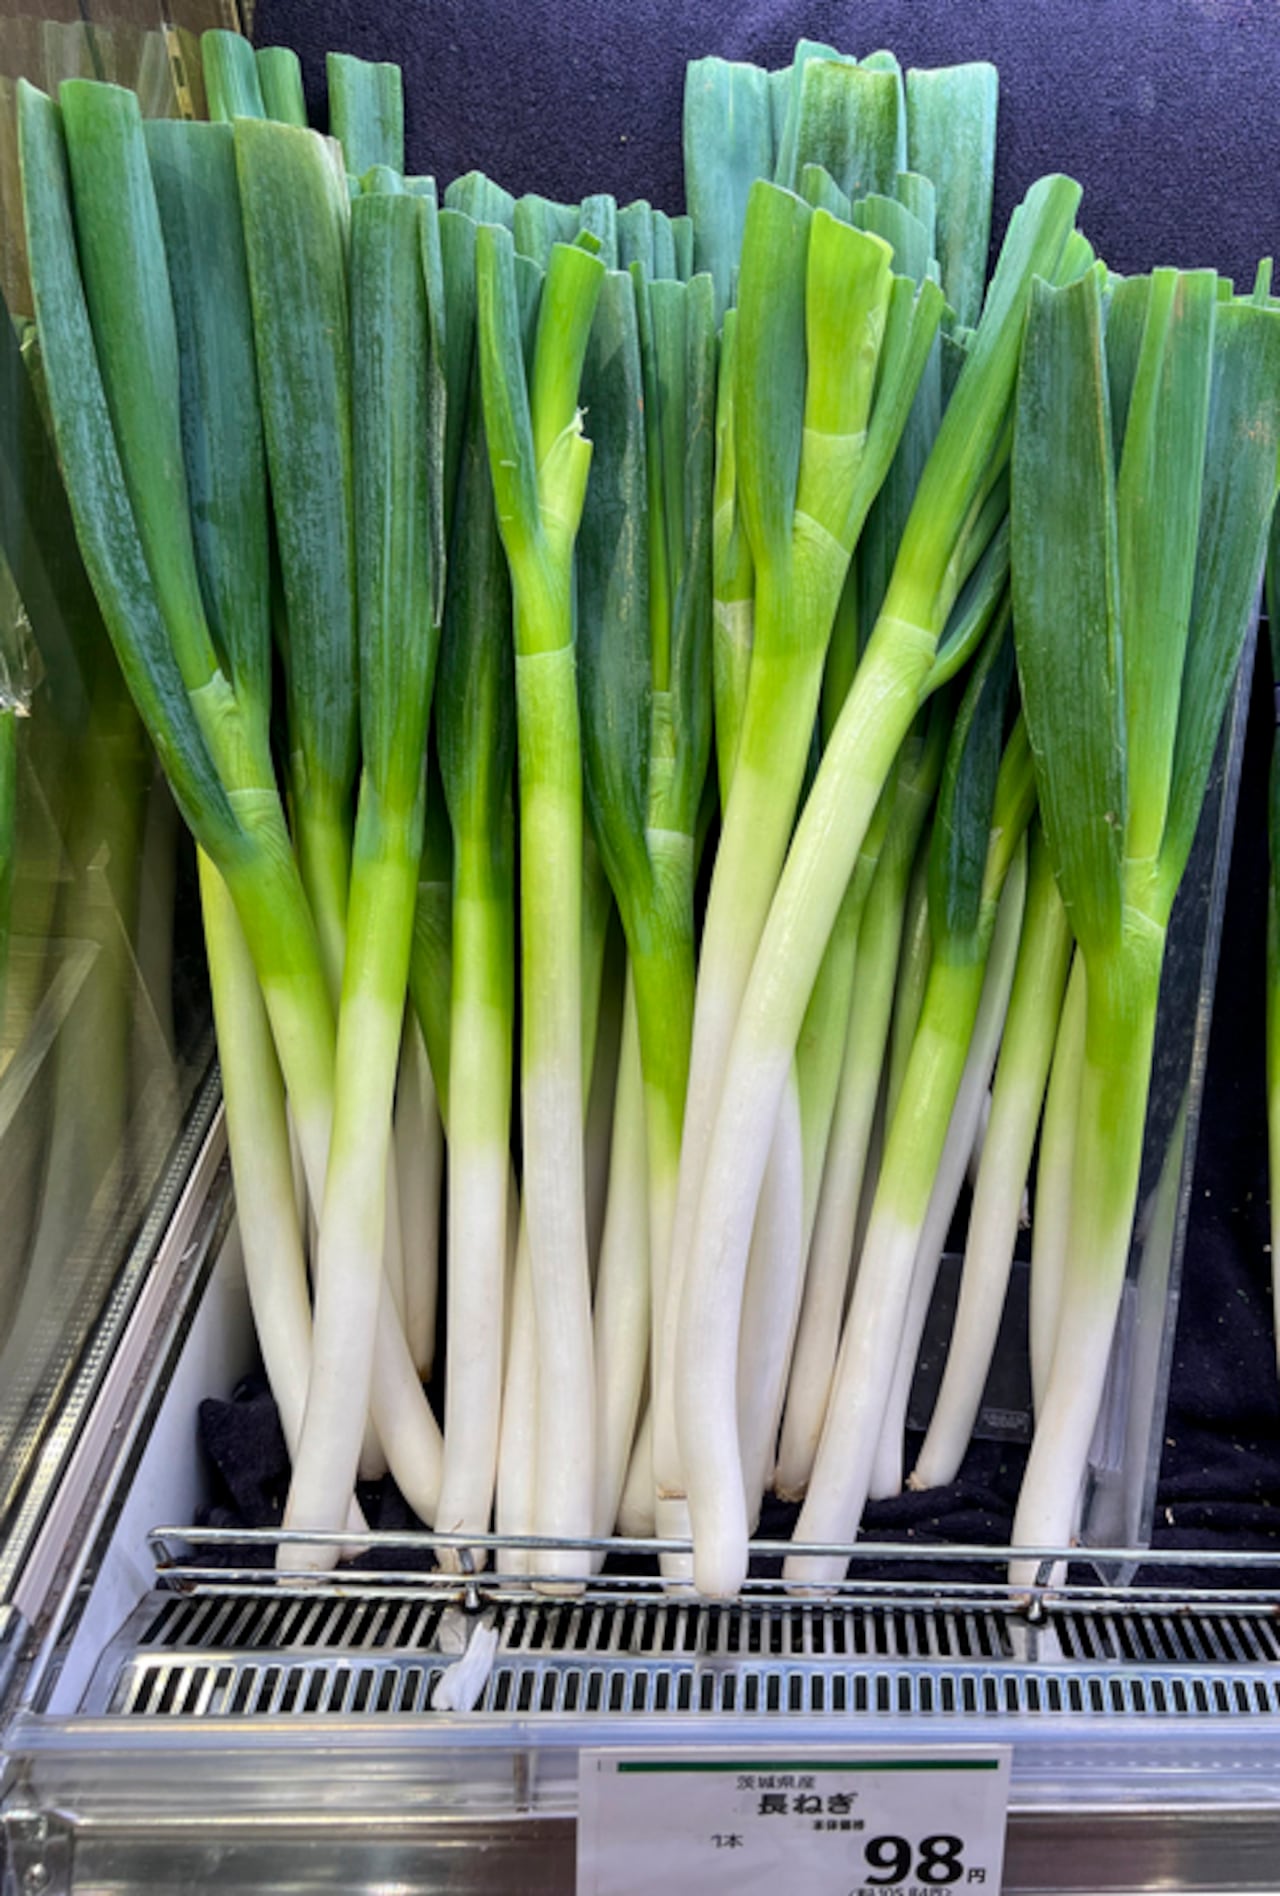 La cebolla larga puede ser sembrada en una huerta urbana y en el supermercado.